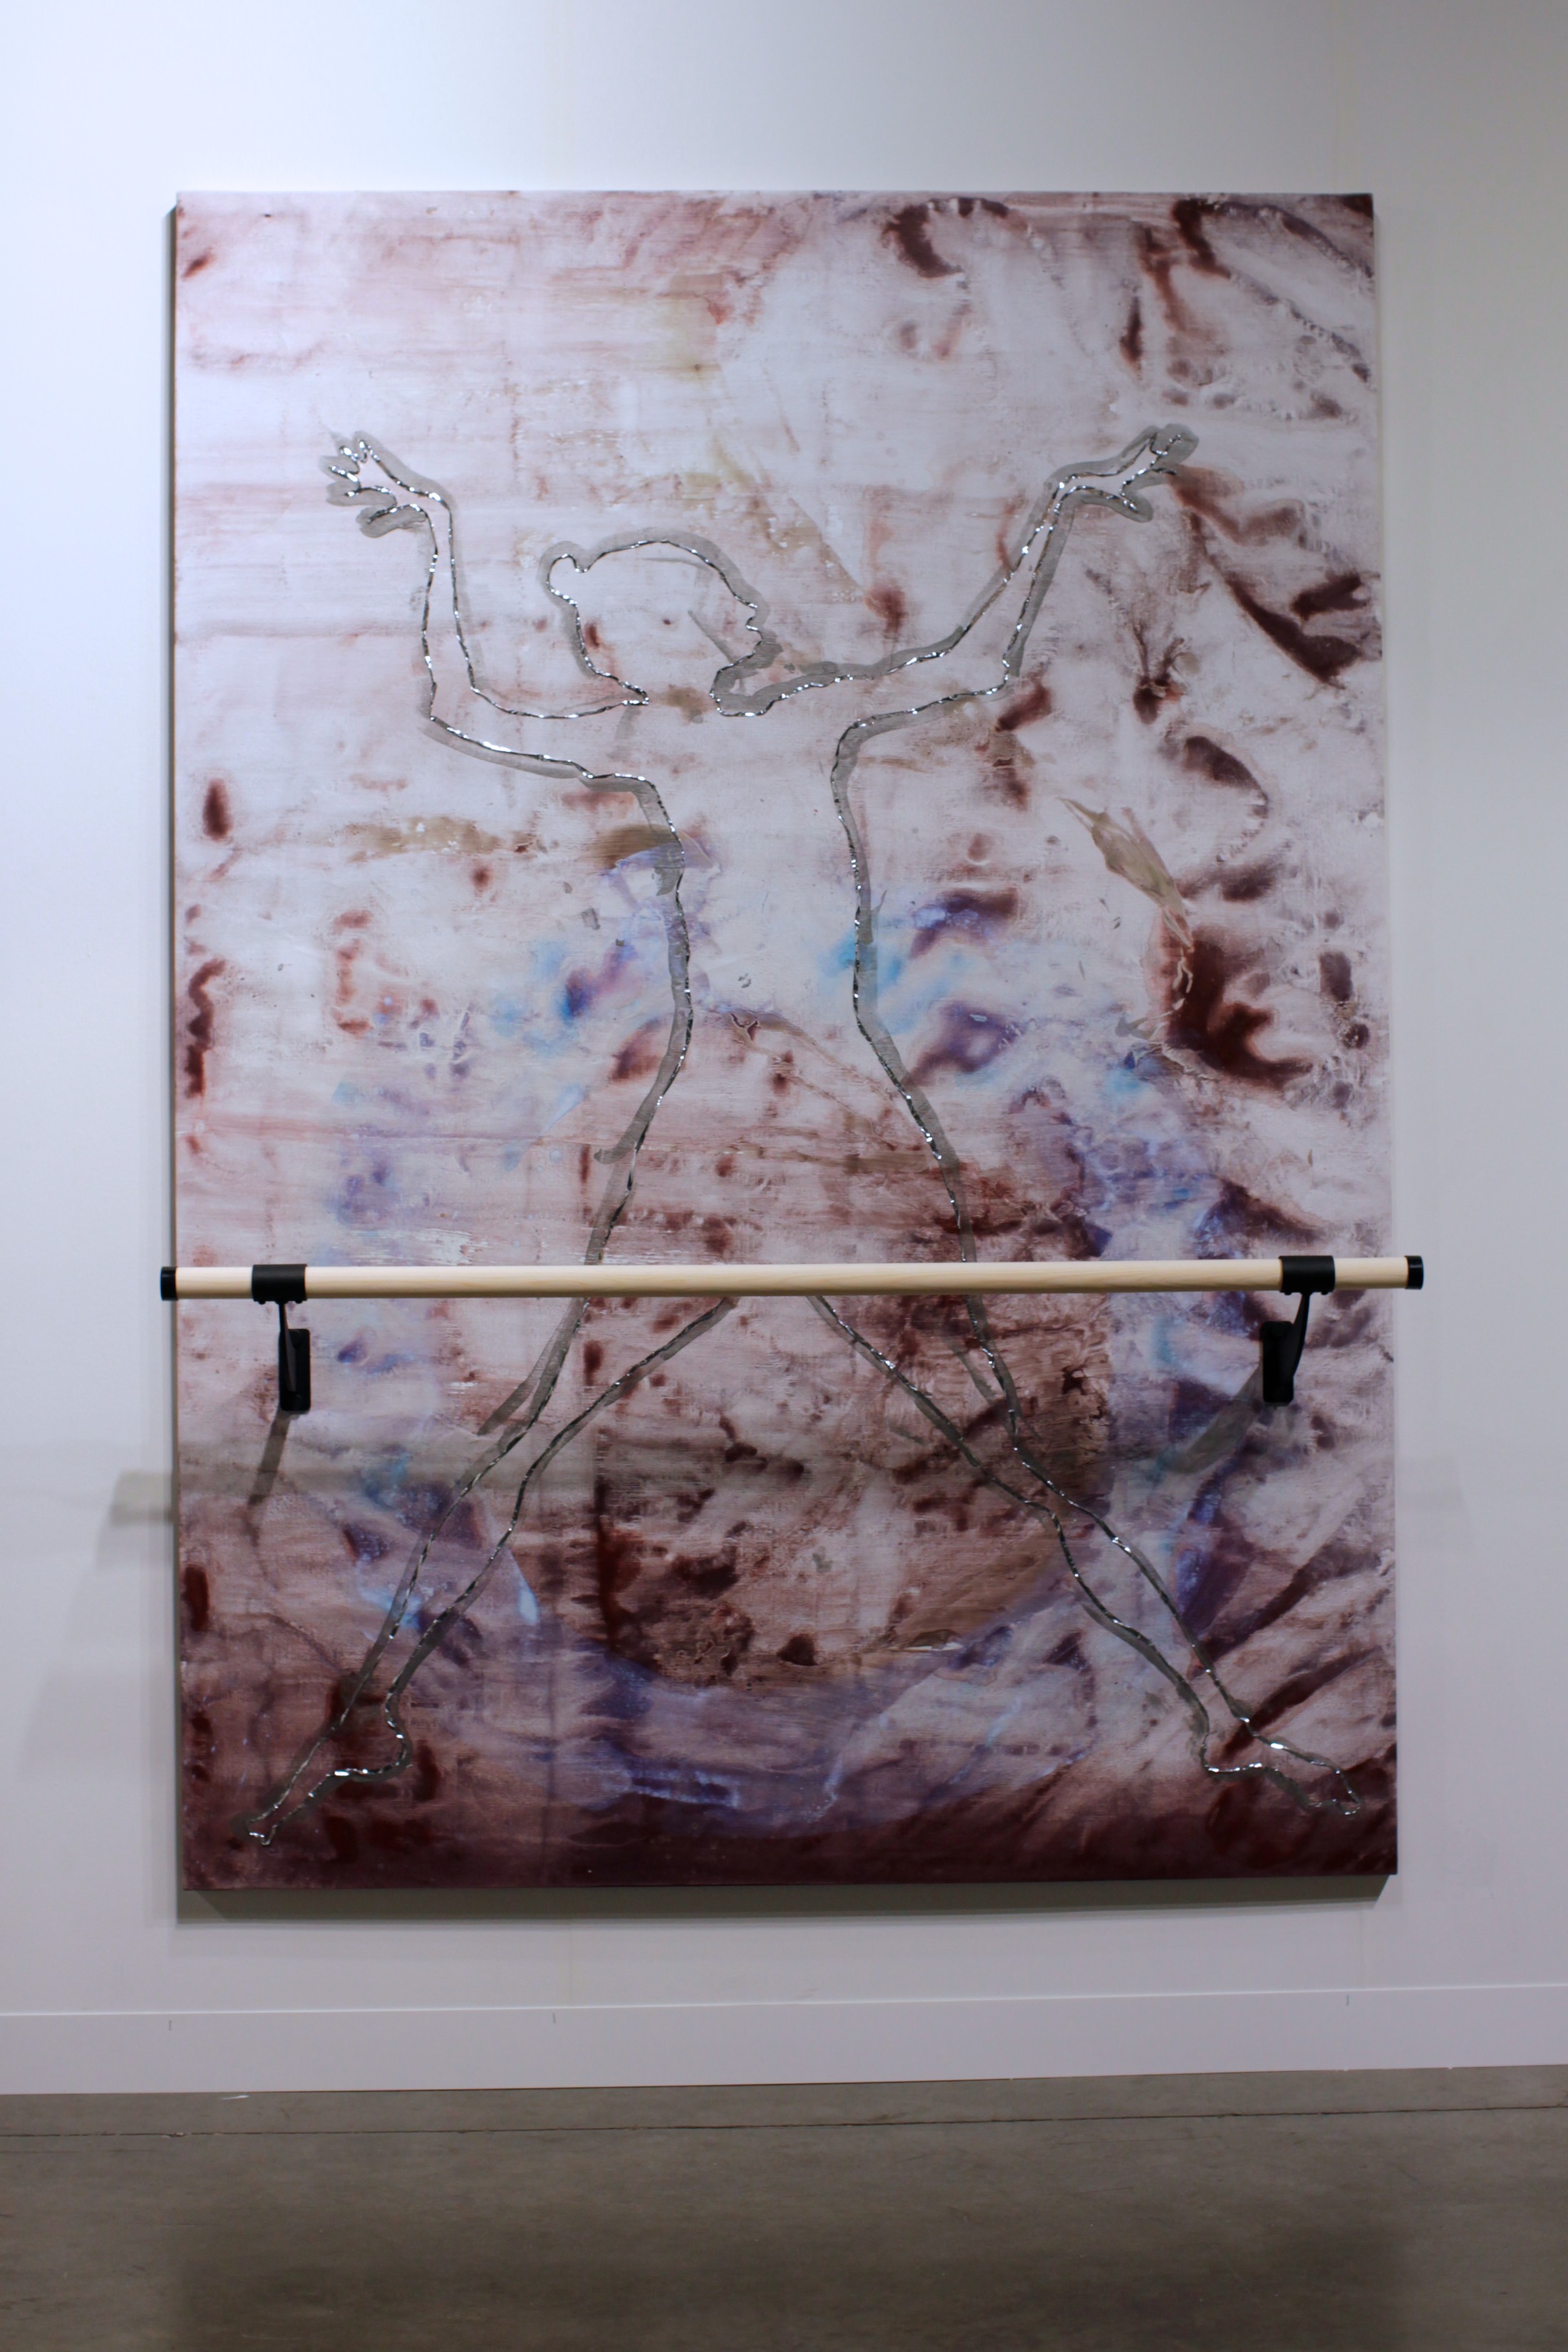 Ushering in Jupiter, 7x5 feet, acrylic, mylar tape, ballet barre on linen, 2014